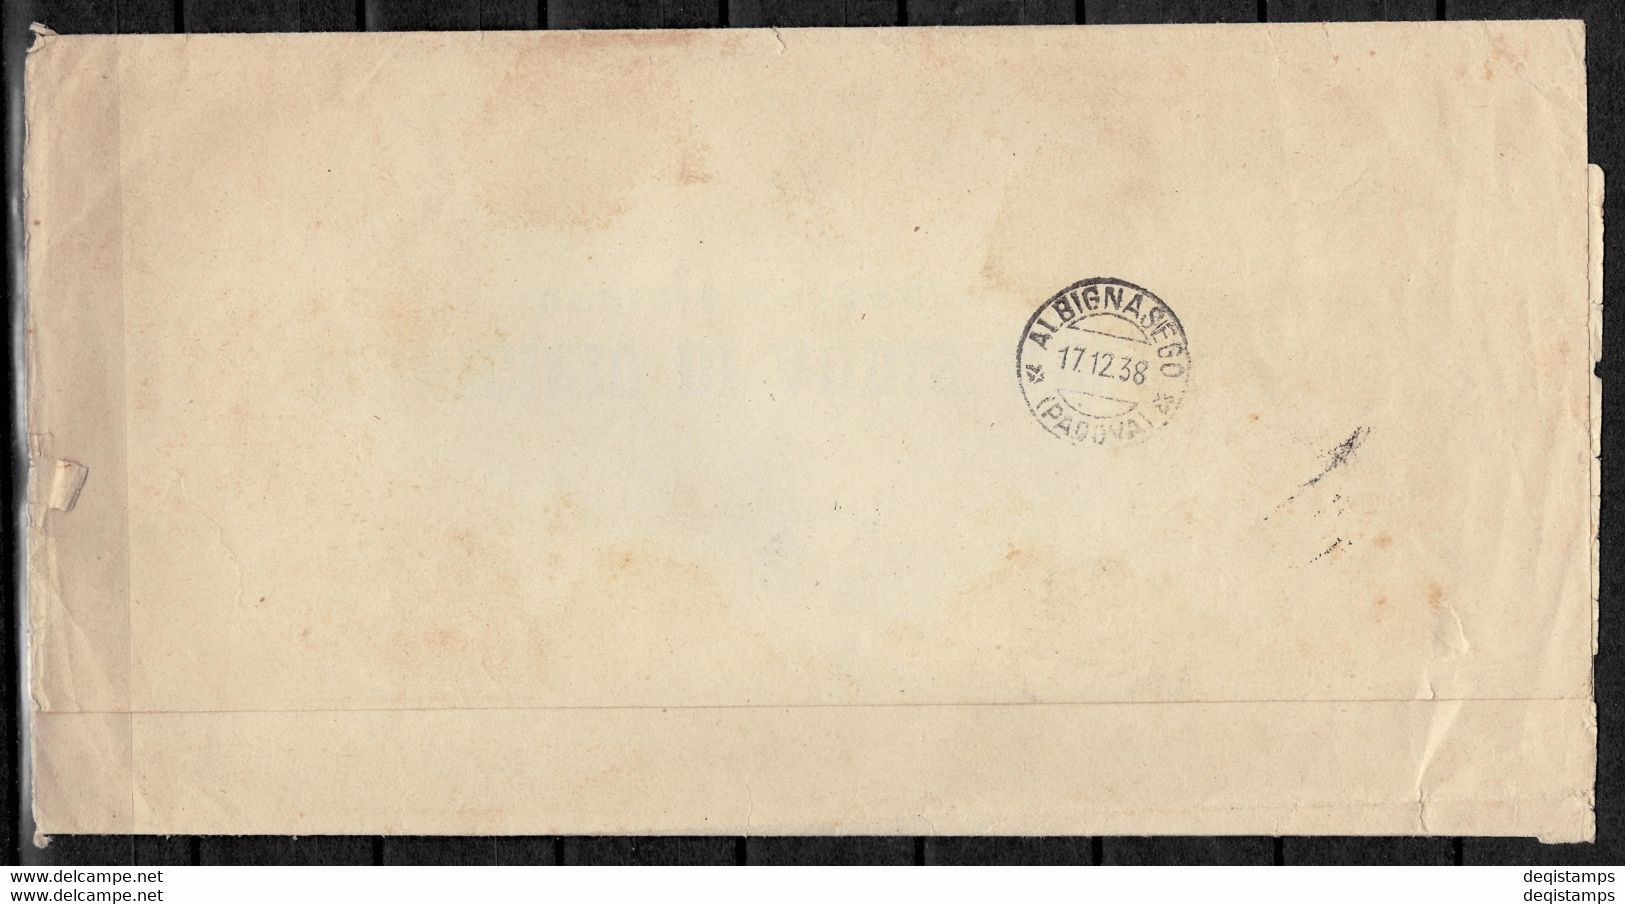 Italy / Ethiopia Cover 1938 ☀ Postal History / Public Notice / Ufficio Anagrafe - Ethiopia